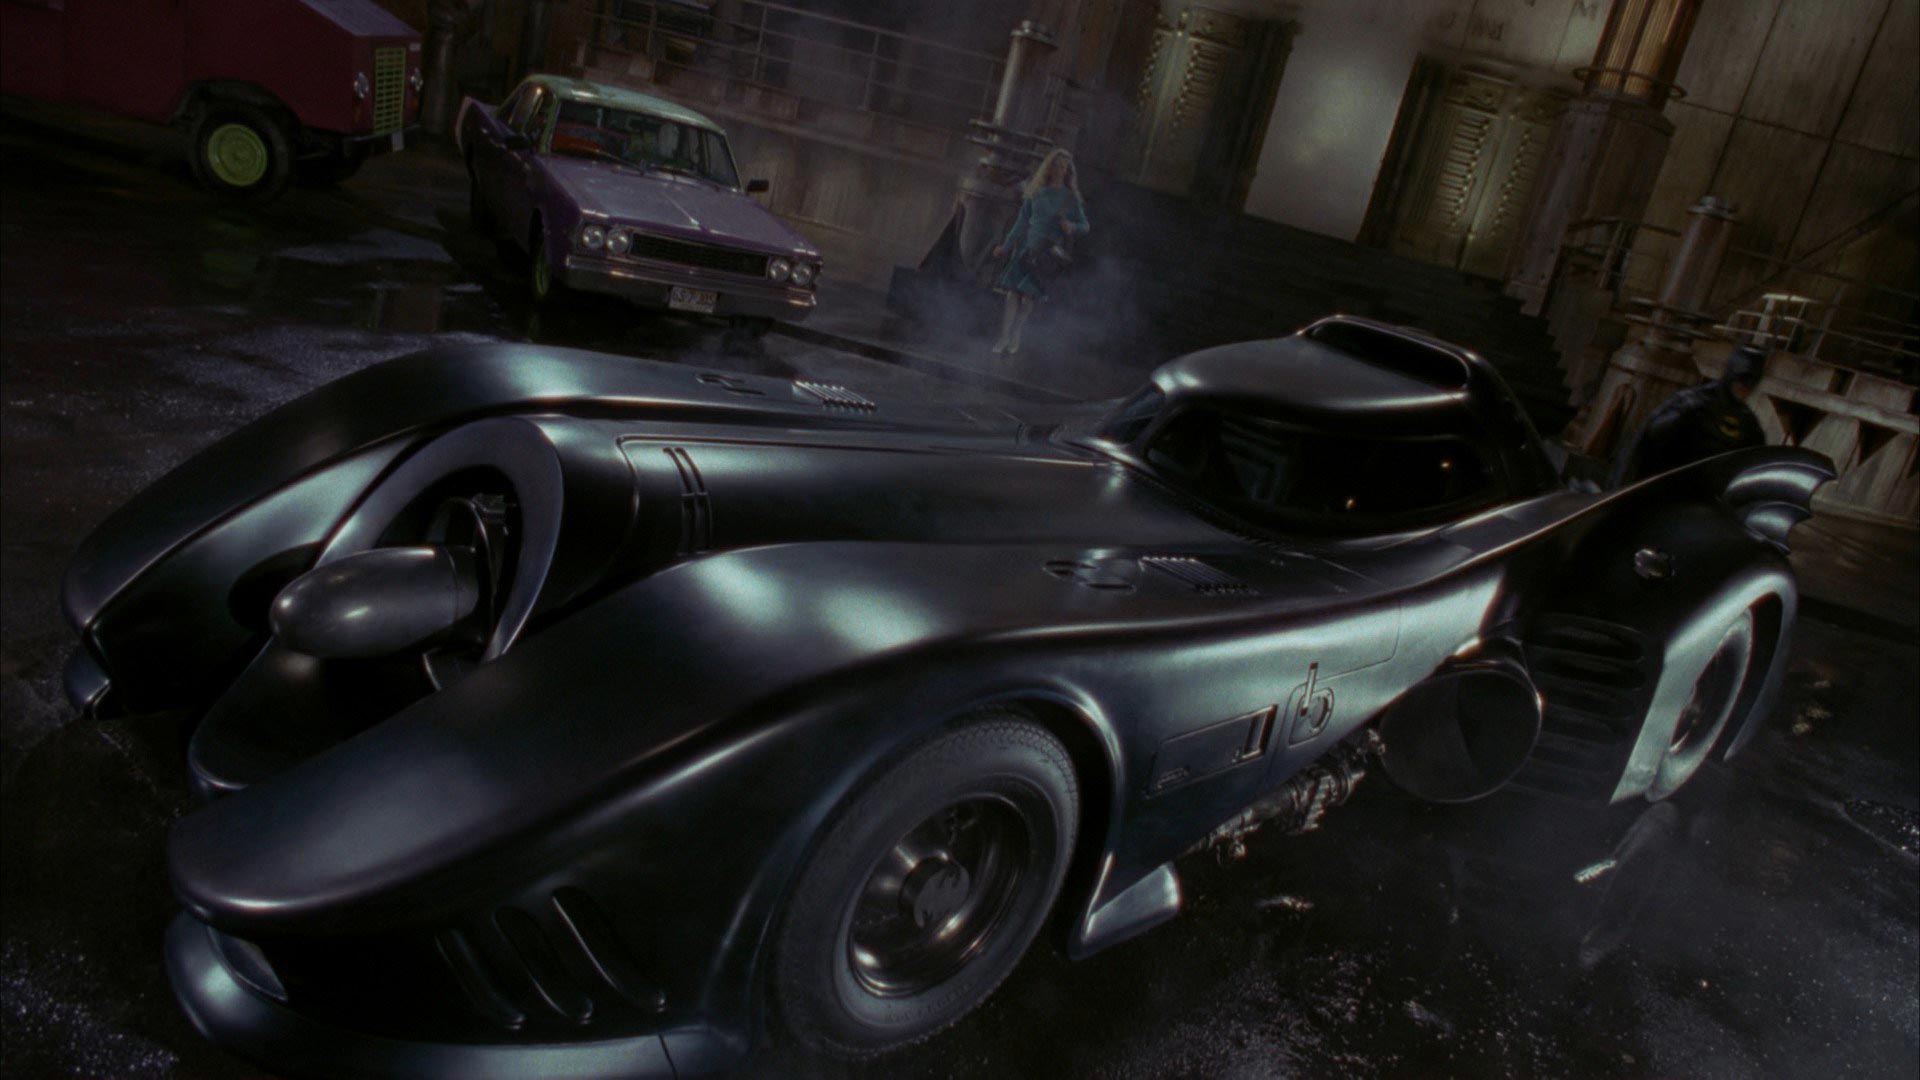 Batman 1989 Batmobile Background